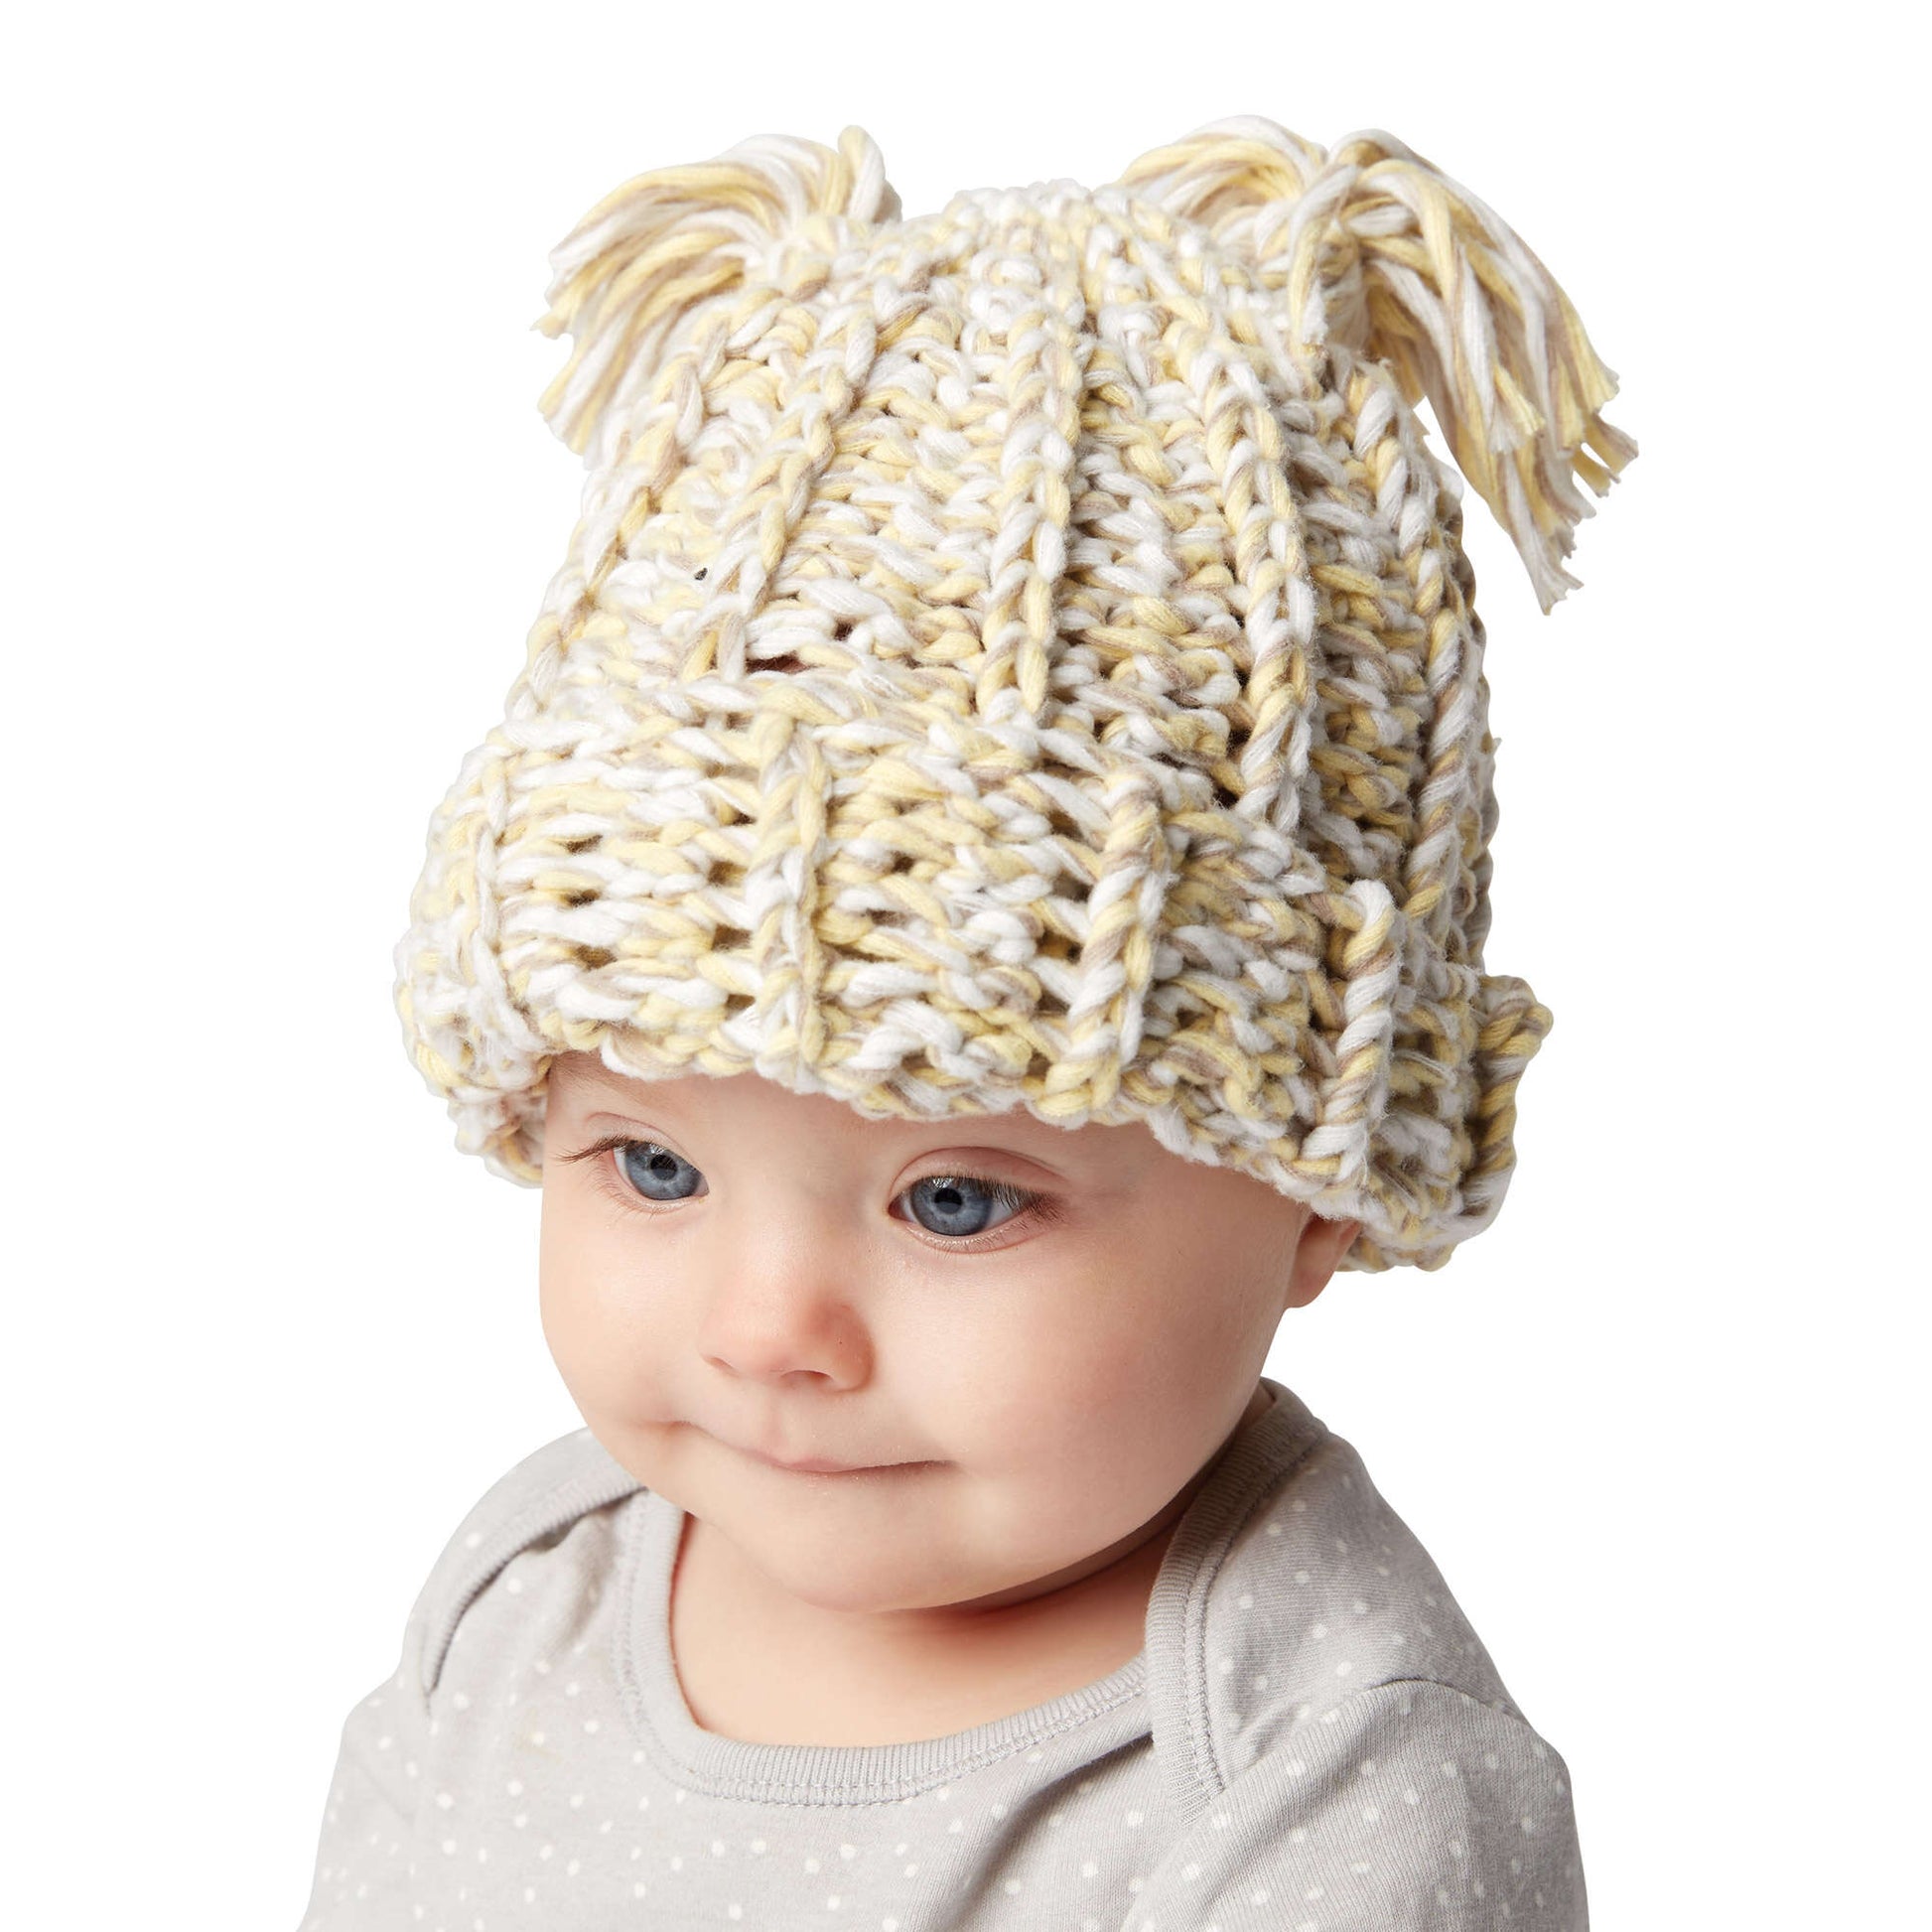 Free Bernat Crochet Baby Hat Pattern